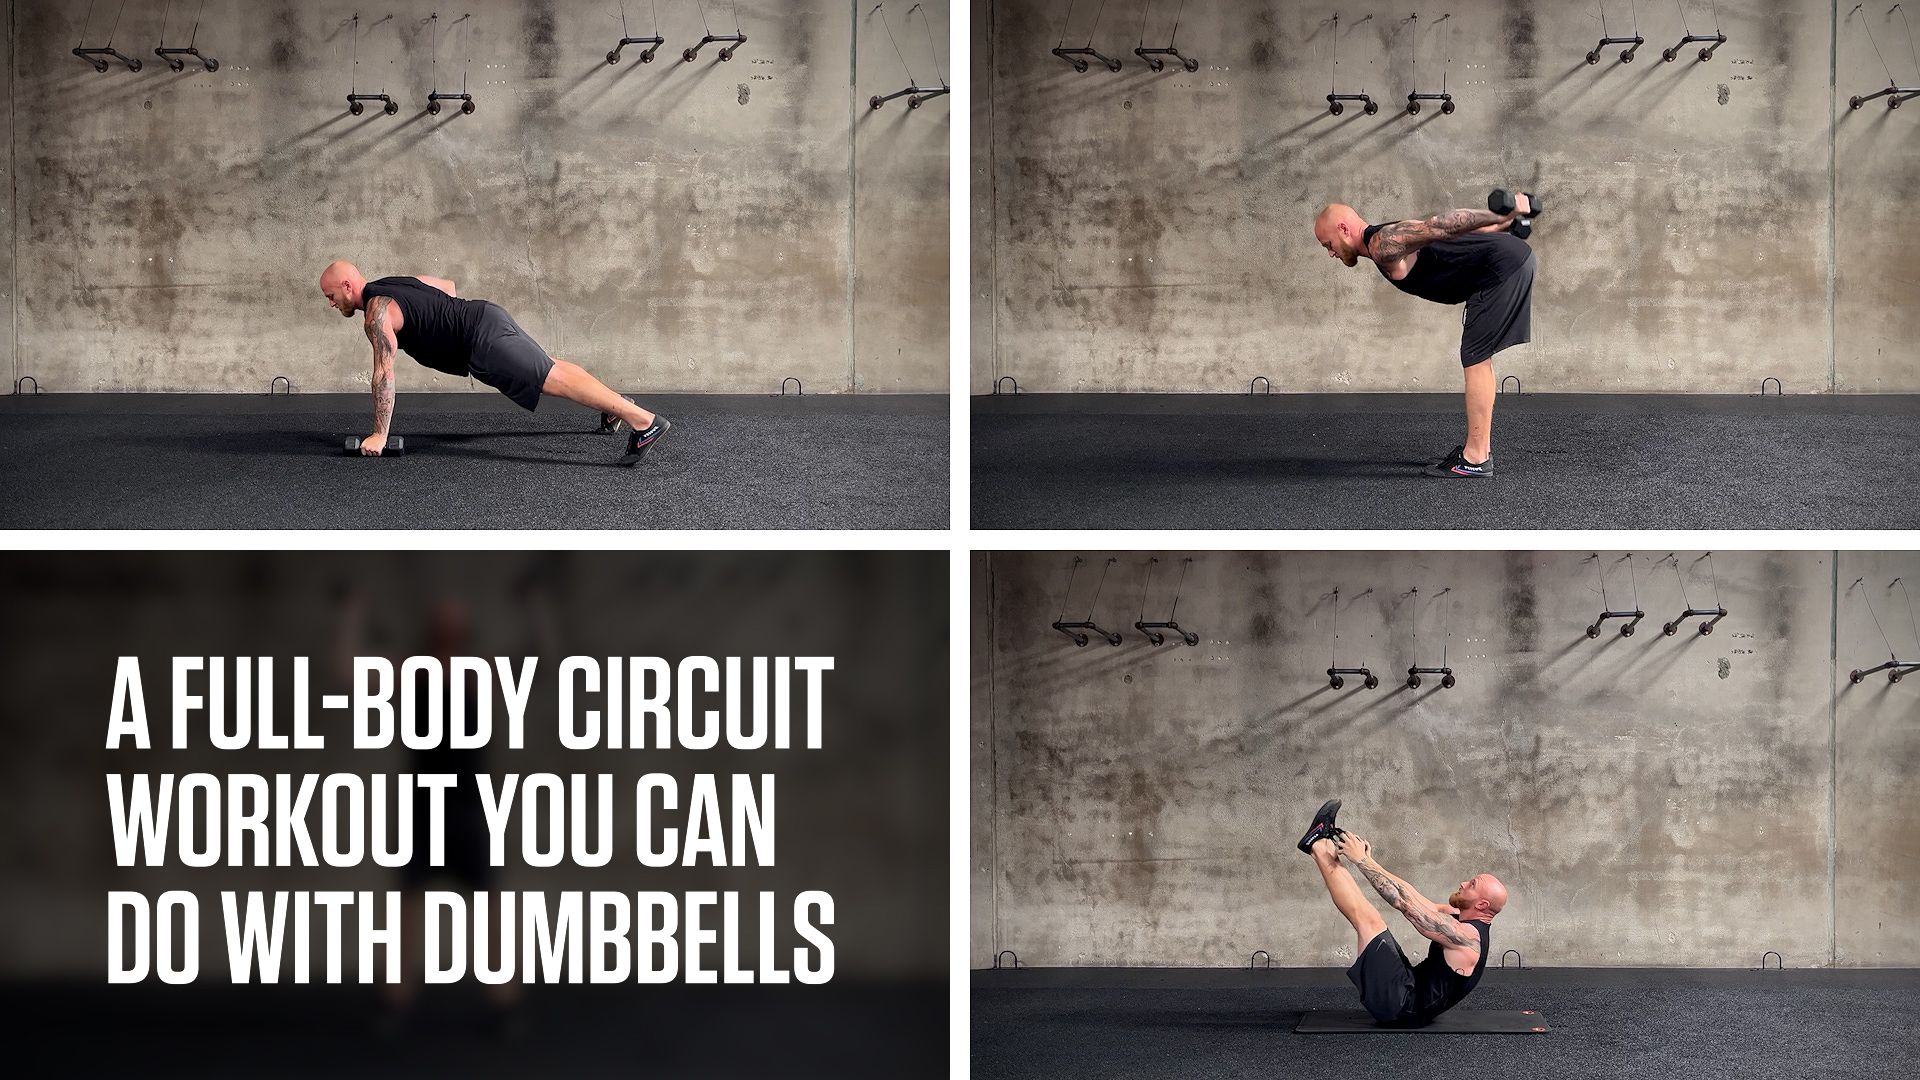 Full Body Circuit Workout  Circuit workout, Full body circuit